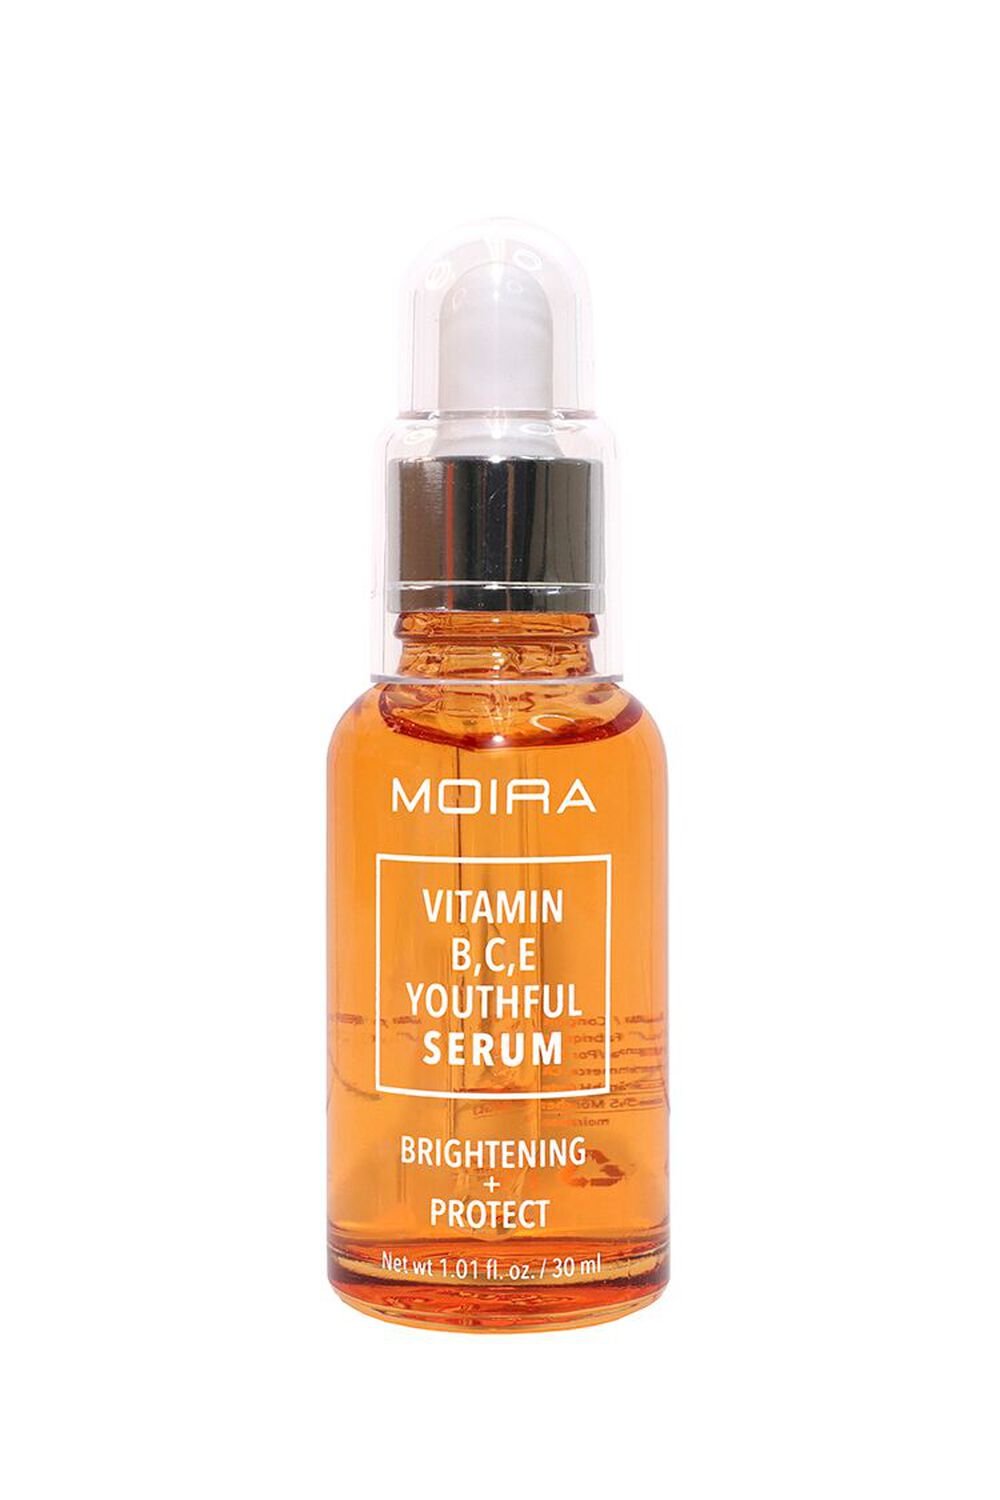 Moira Vitamin B,C,E Youthful Serum, image 2